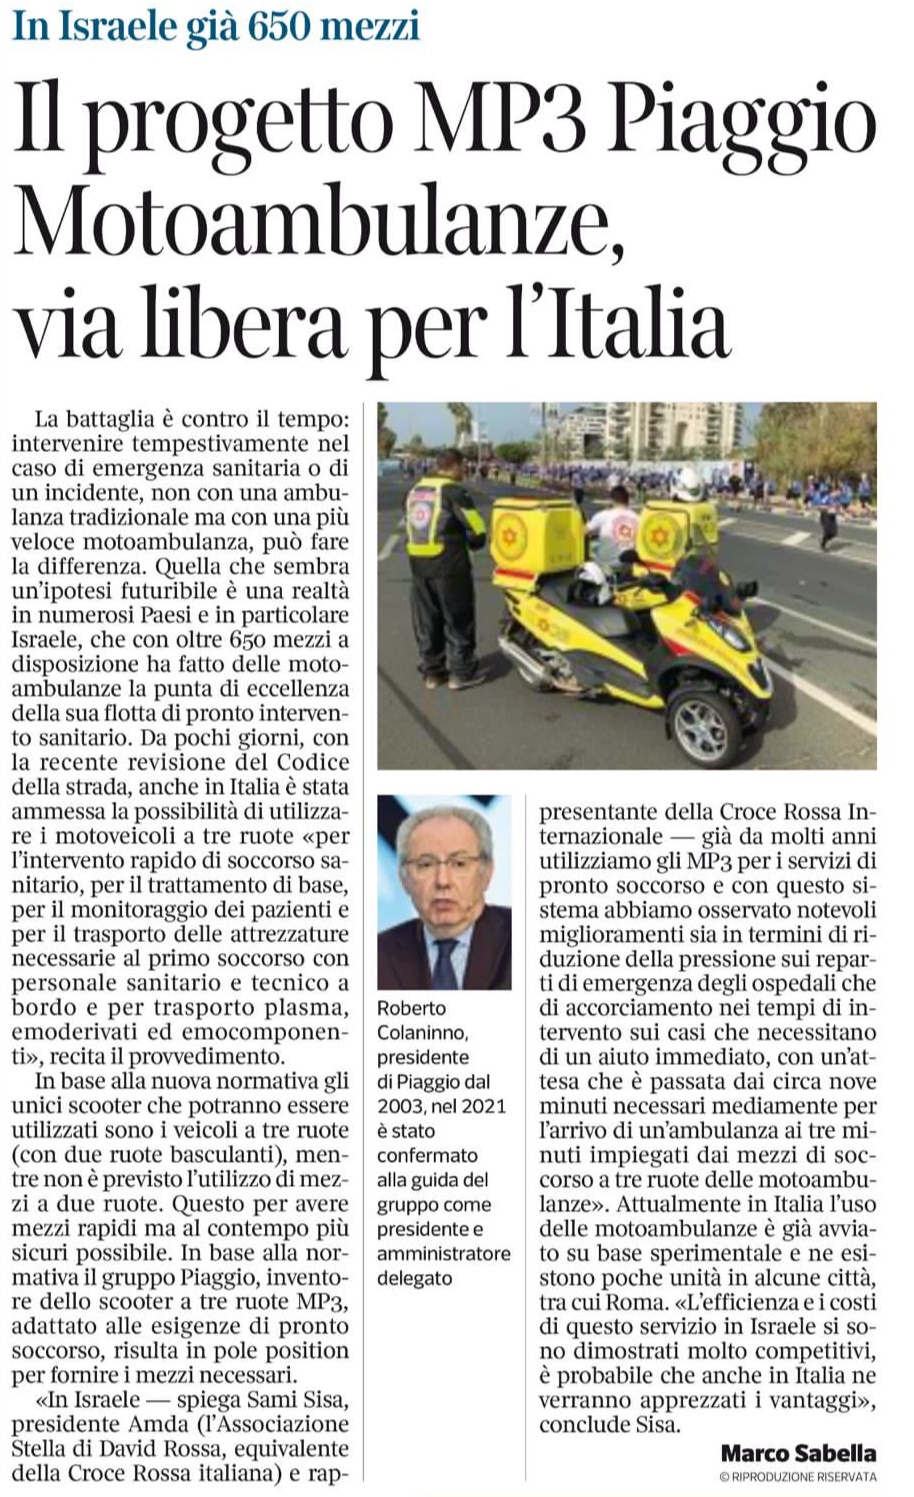 Foto dell'articolo del Corriere della Sera